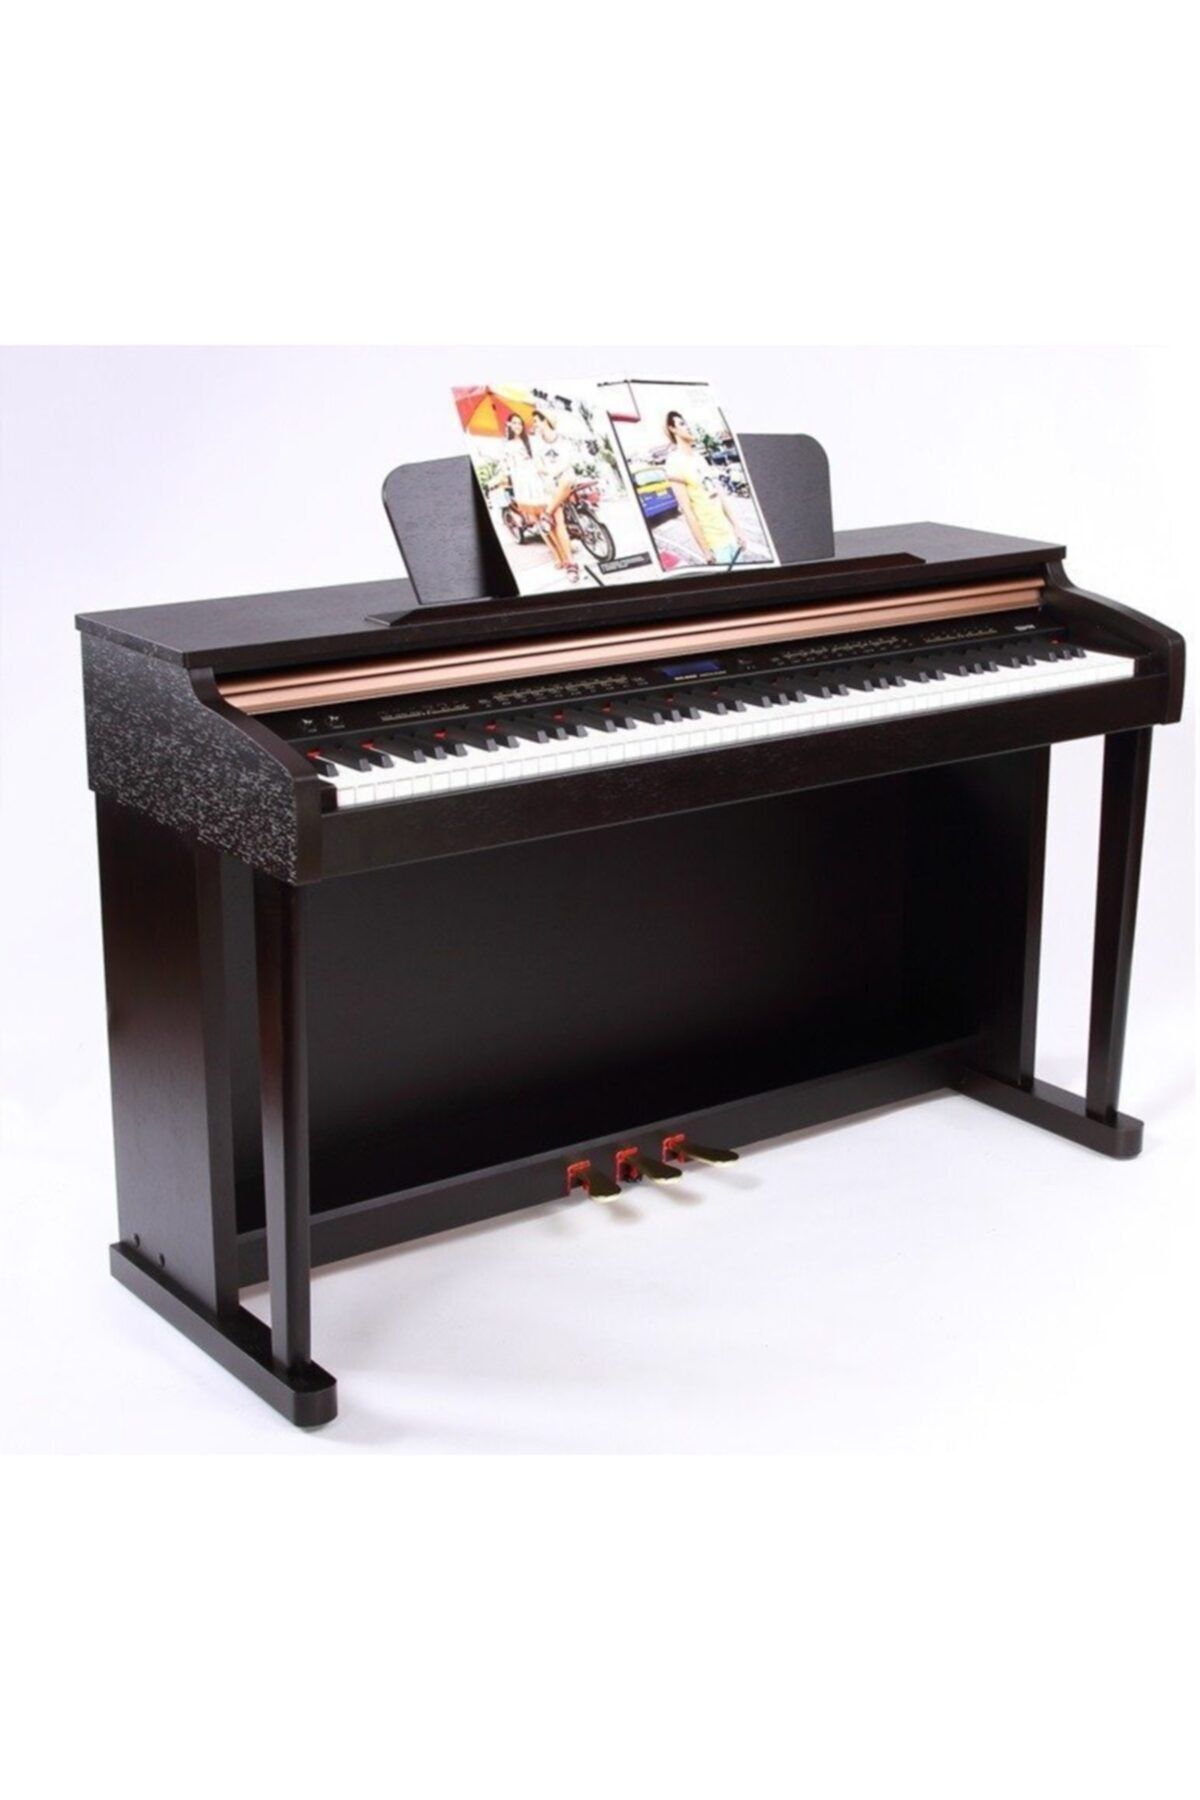 Nemesis Dk-480 Model 192 Polofony Kahve Renk Tabureli Yeni Model Dijital Piyano